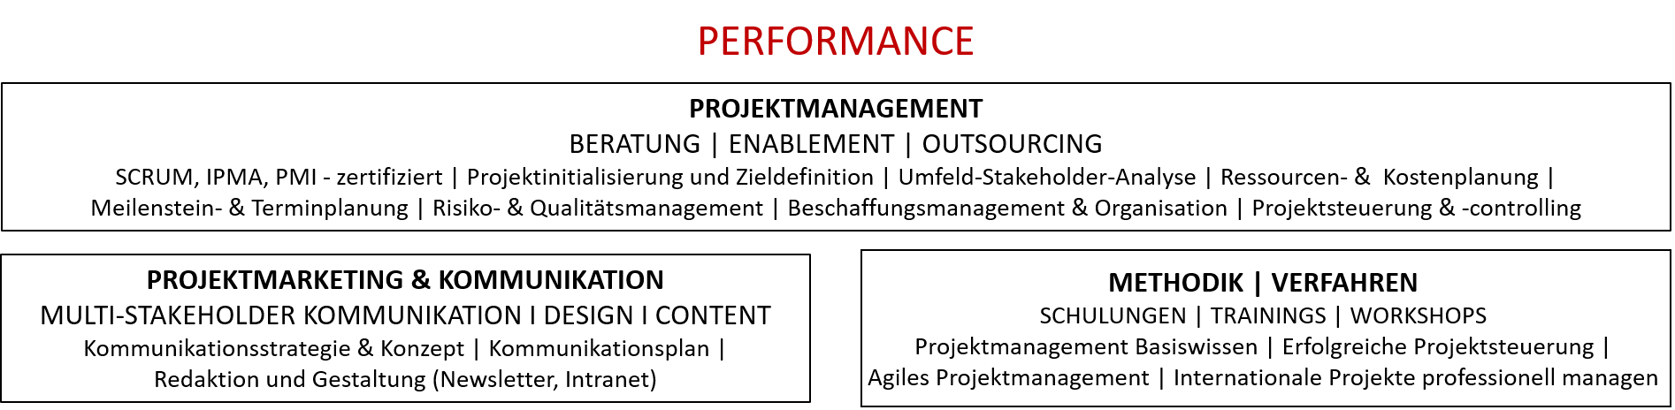 PDC - Projektmanagement - Performance